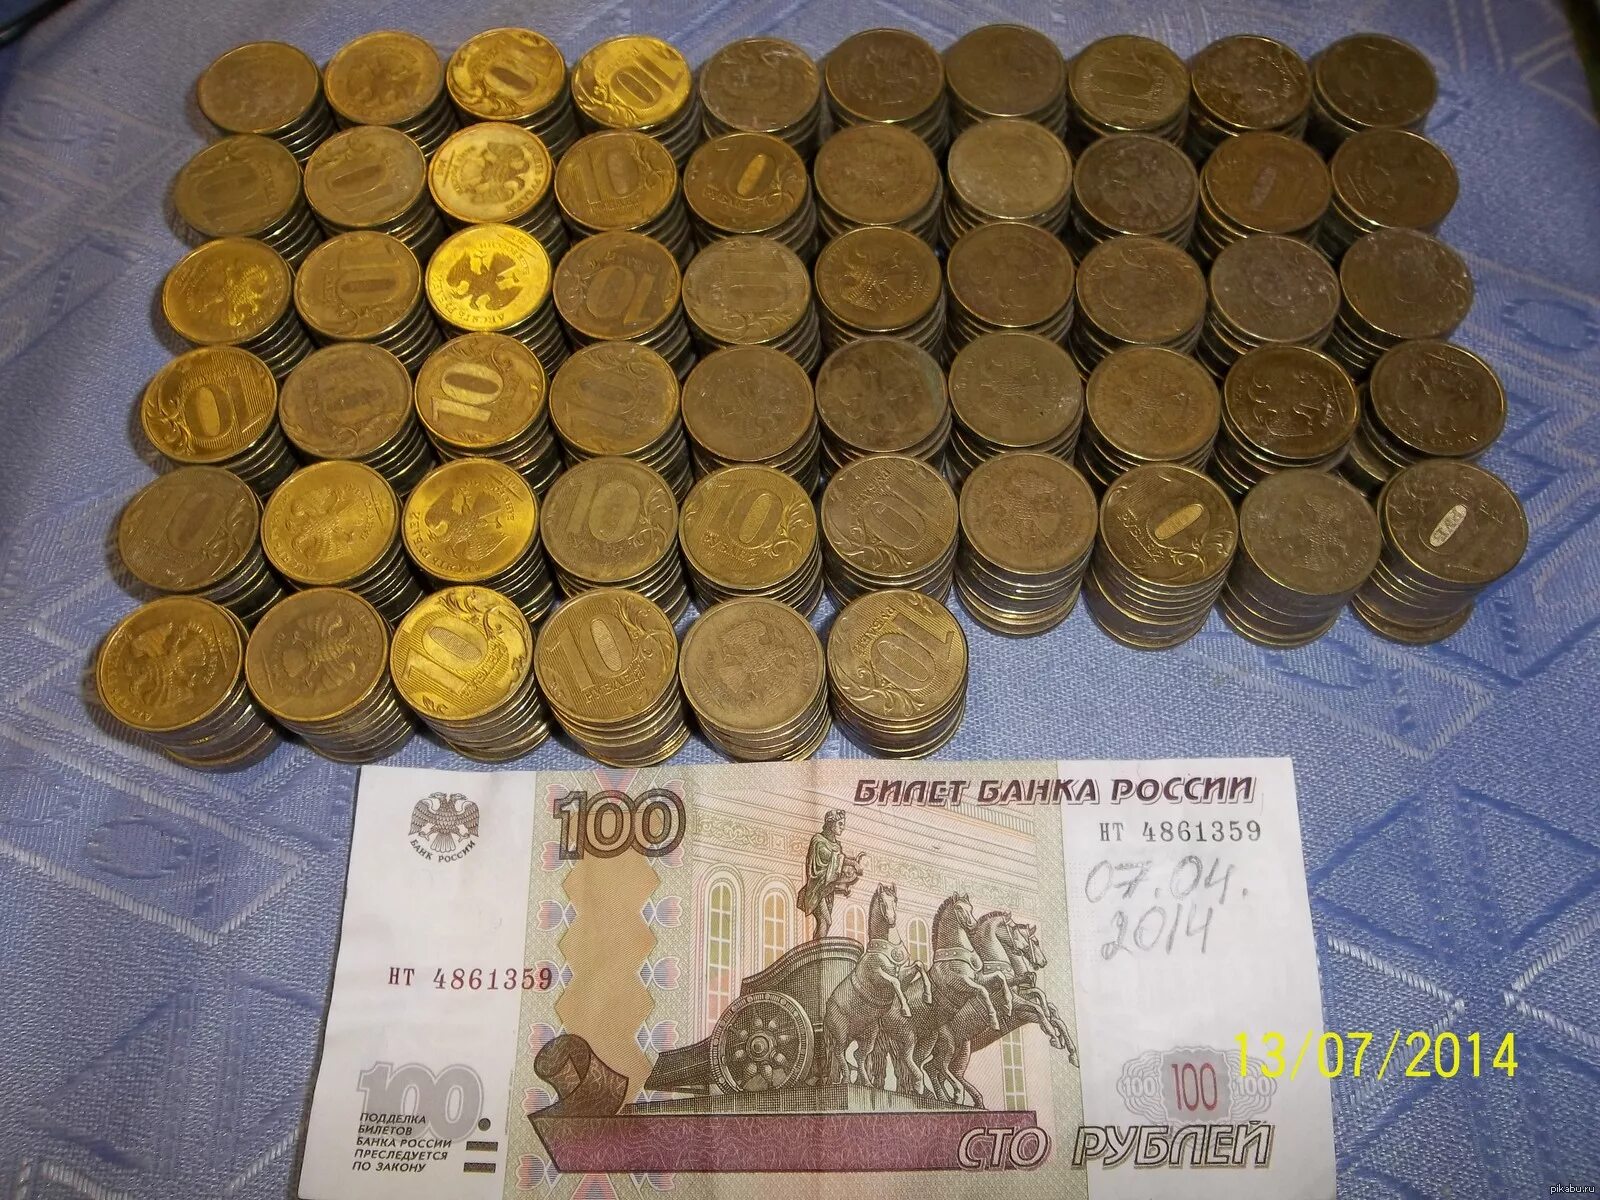 1000 Монет по 5 рублей. 1000 Монет по 10 рублей. 1000 Рублей 10 рублевыми монетами. 100 000 По 10 рублей монетами.